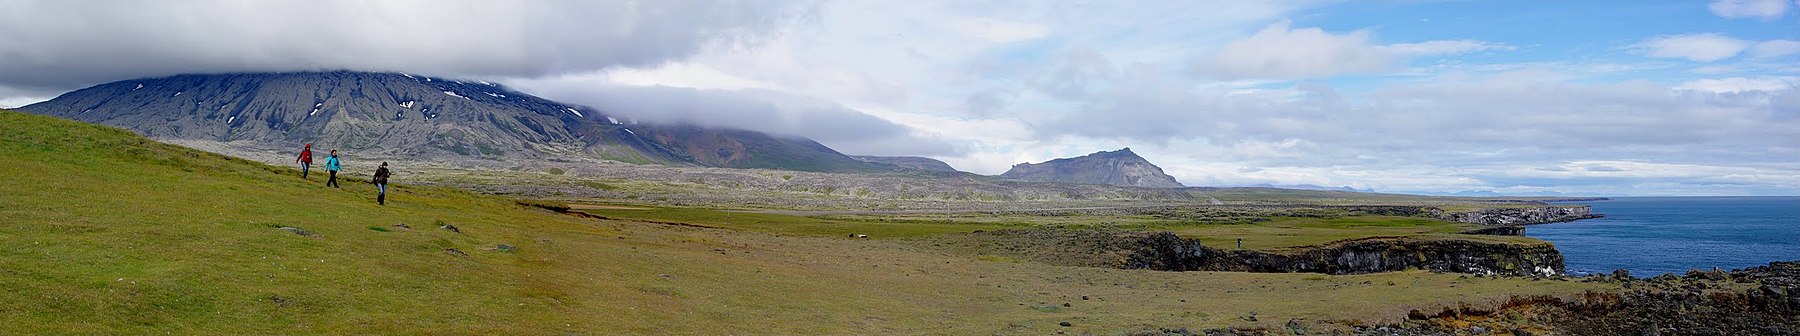 Arnarstapi - zakątek, który urzeka niezwykłym pięknem przyrody, bazaltowymi klifami o ostrych krawędziach oraz bogatym życiem ptactwa. Iceland, Islandia, fotokraj.com - panoramio.jpg